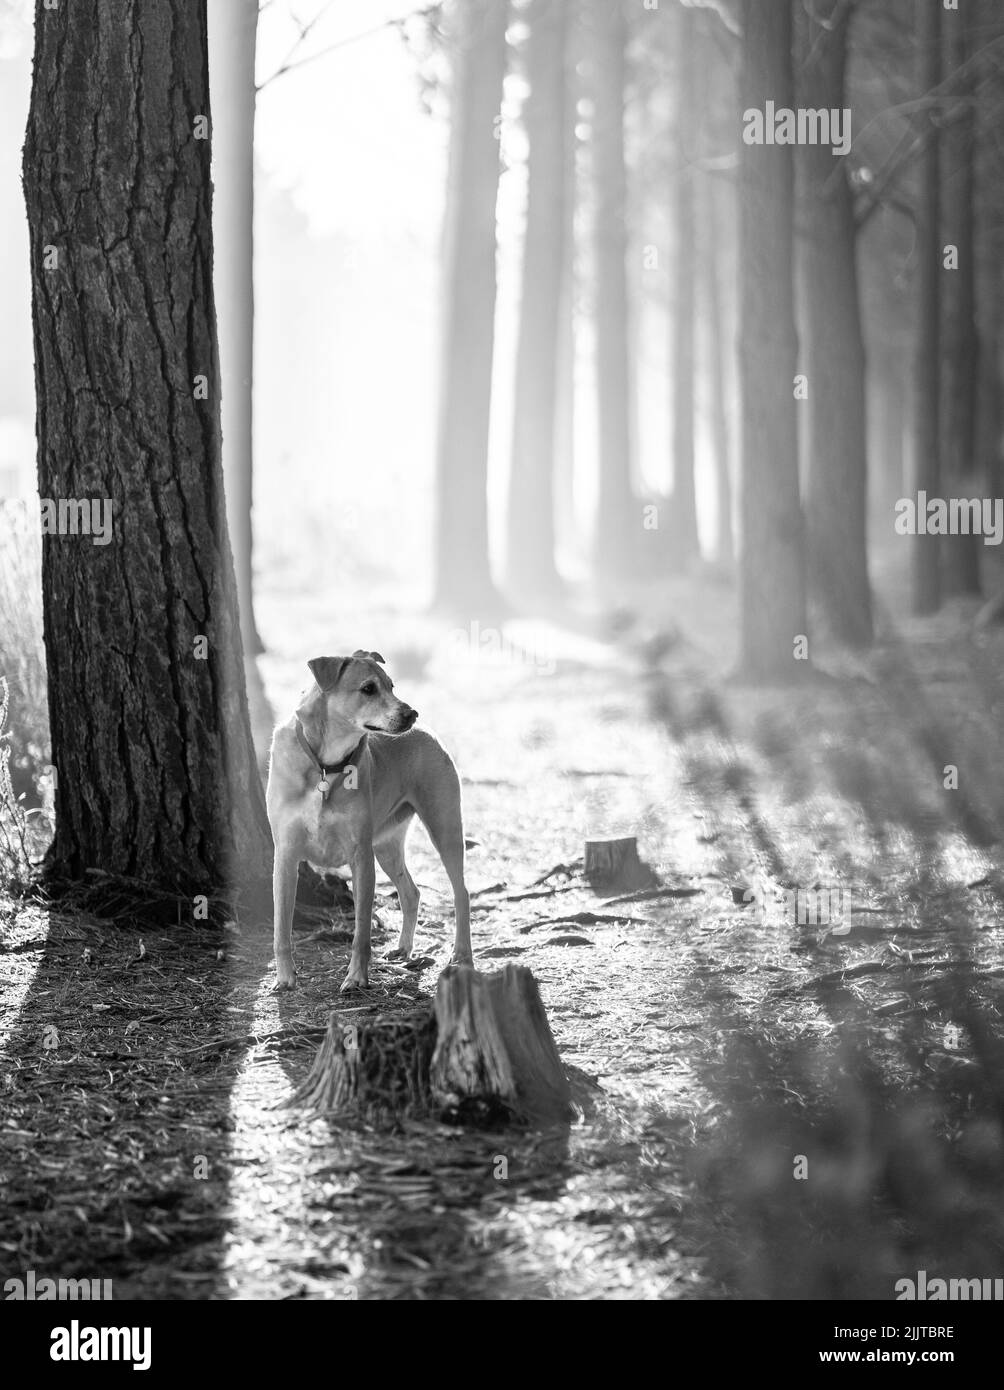 Une photo en niveaux de gris d'un joli chien brun Africain dans la forêt Banque D'Images